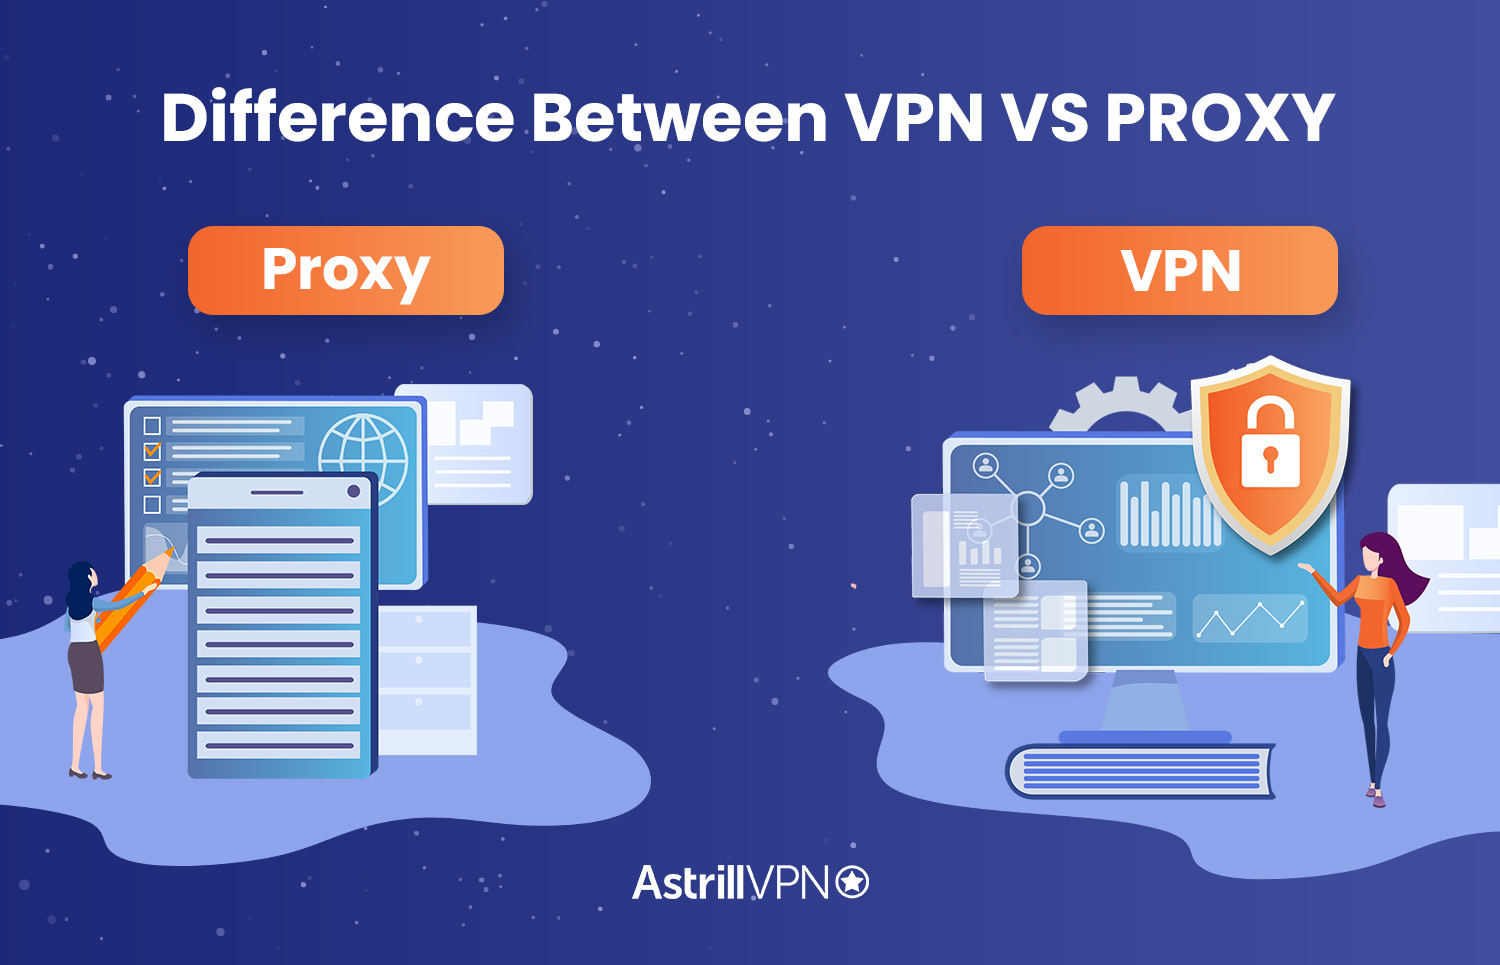 proxy vs vpn for torrenting on windows